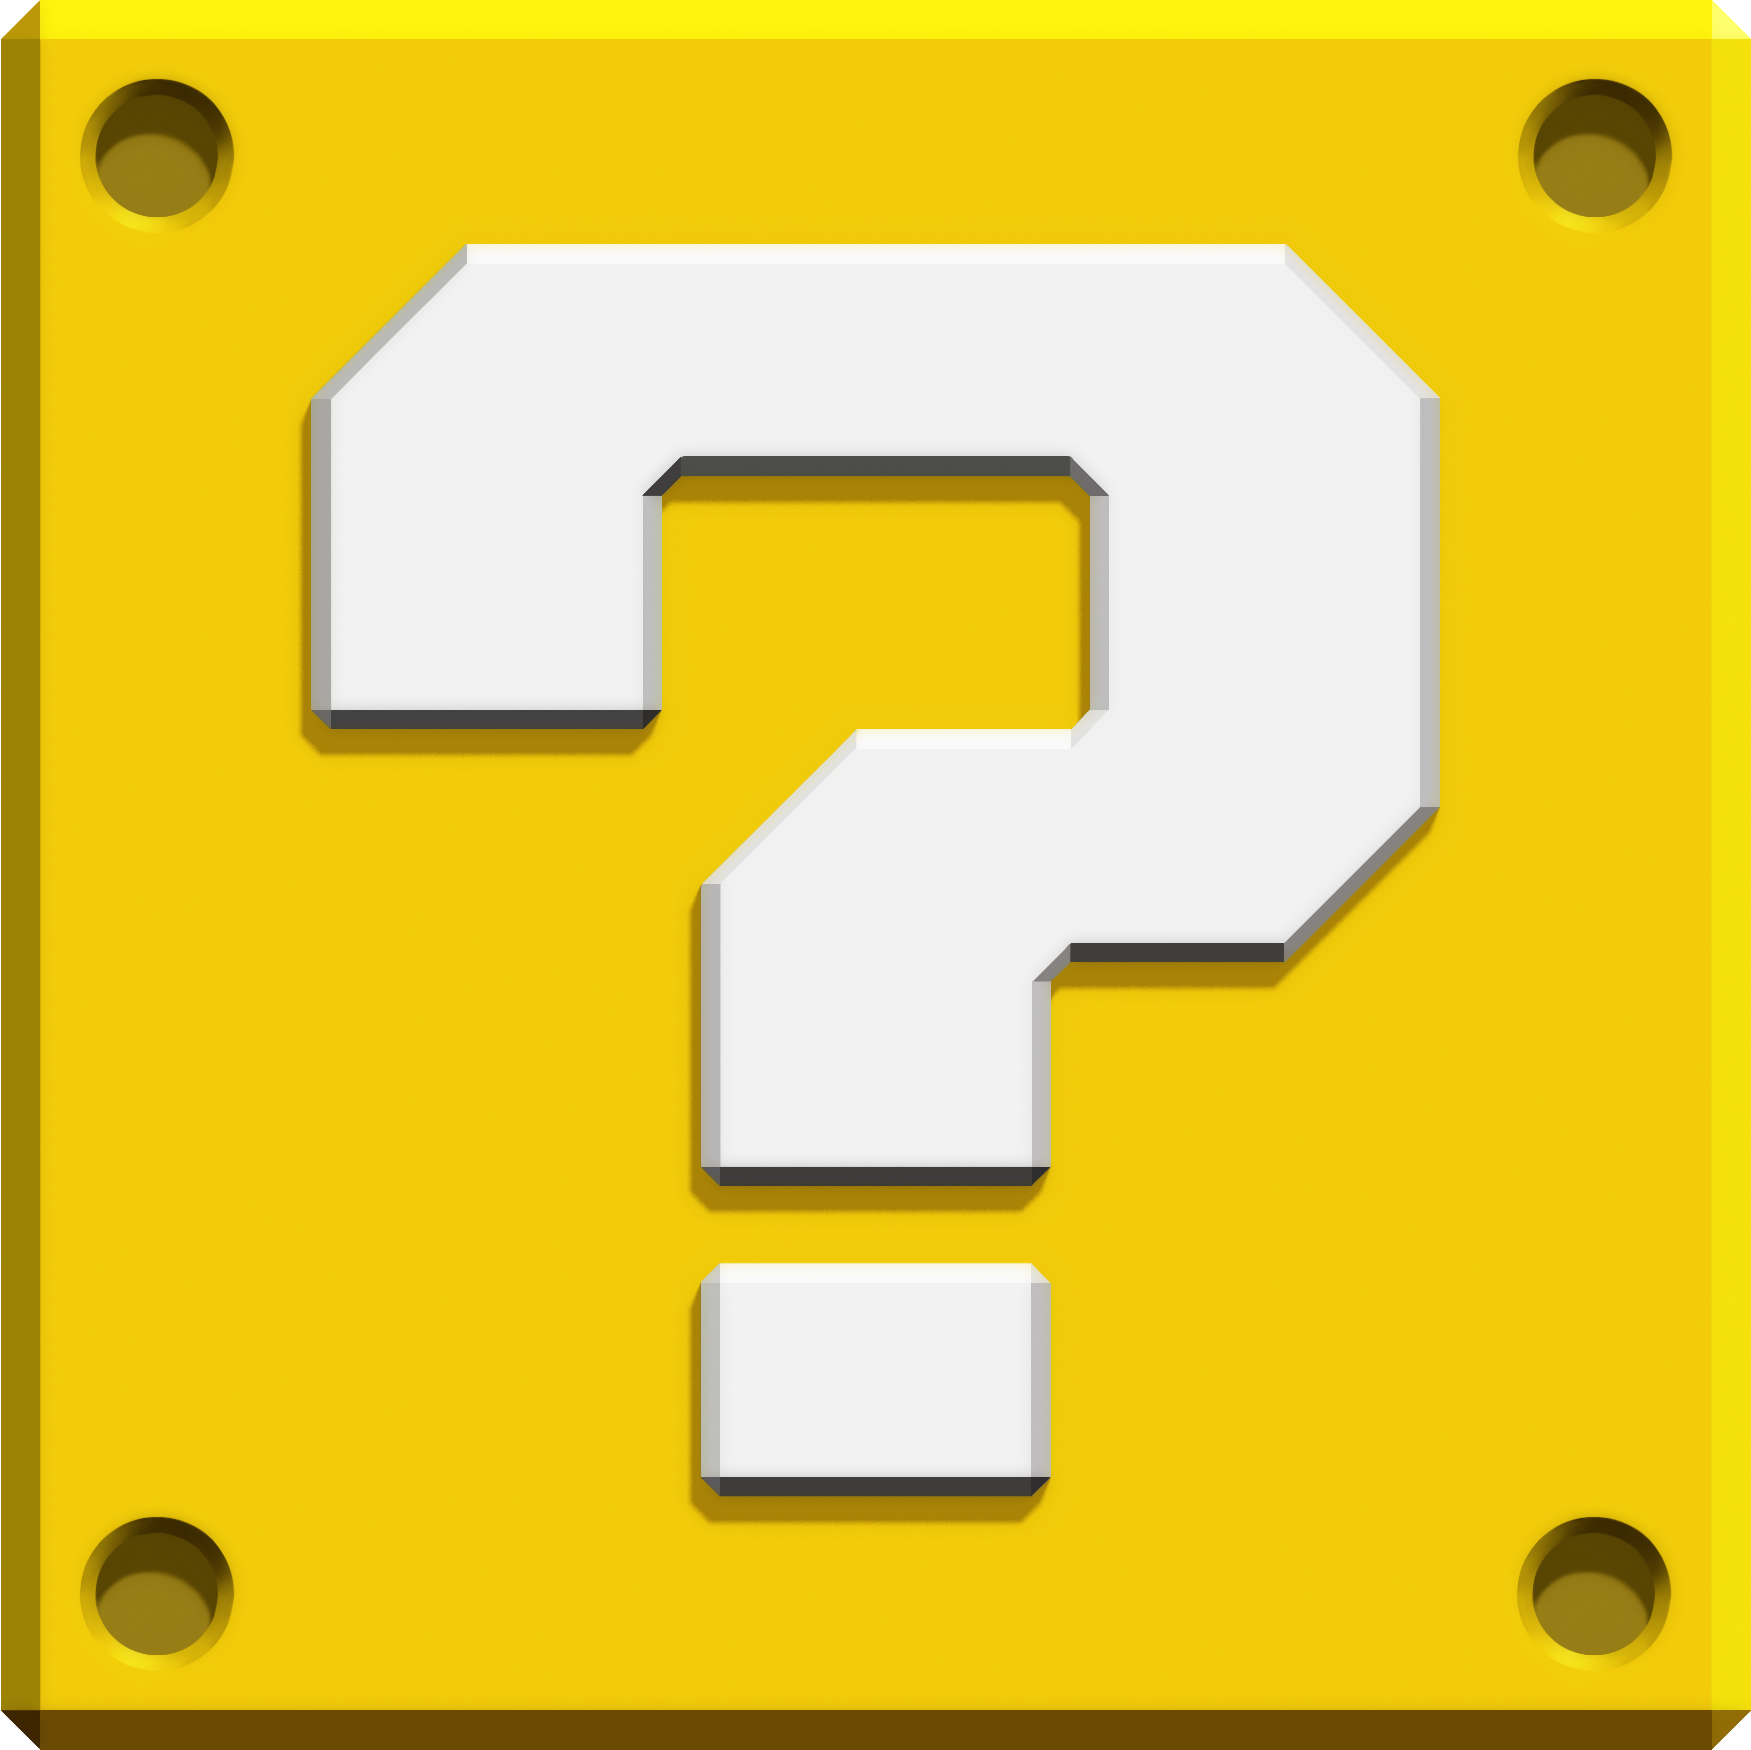 Mario question mark box - www.gruponym.mx